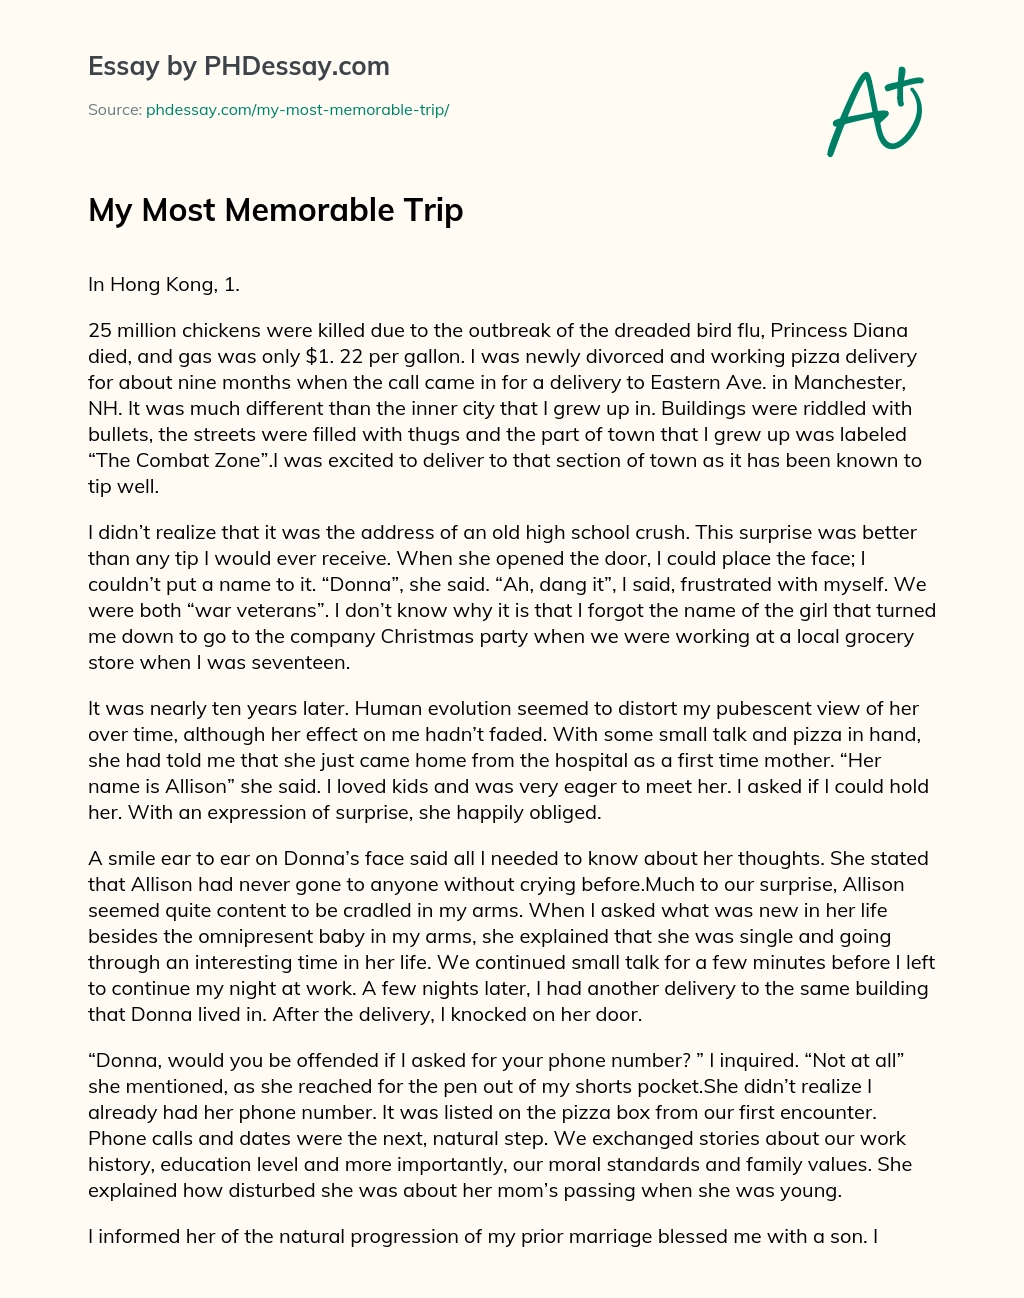 my memorable trip essay 500 words